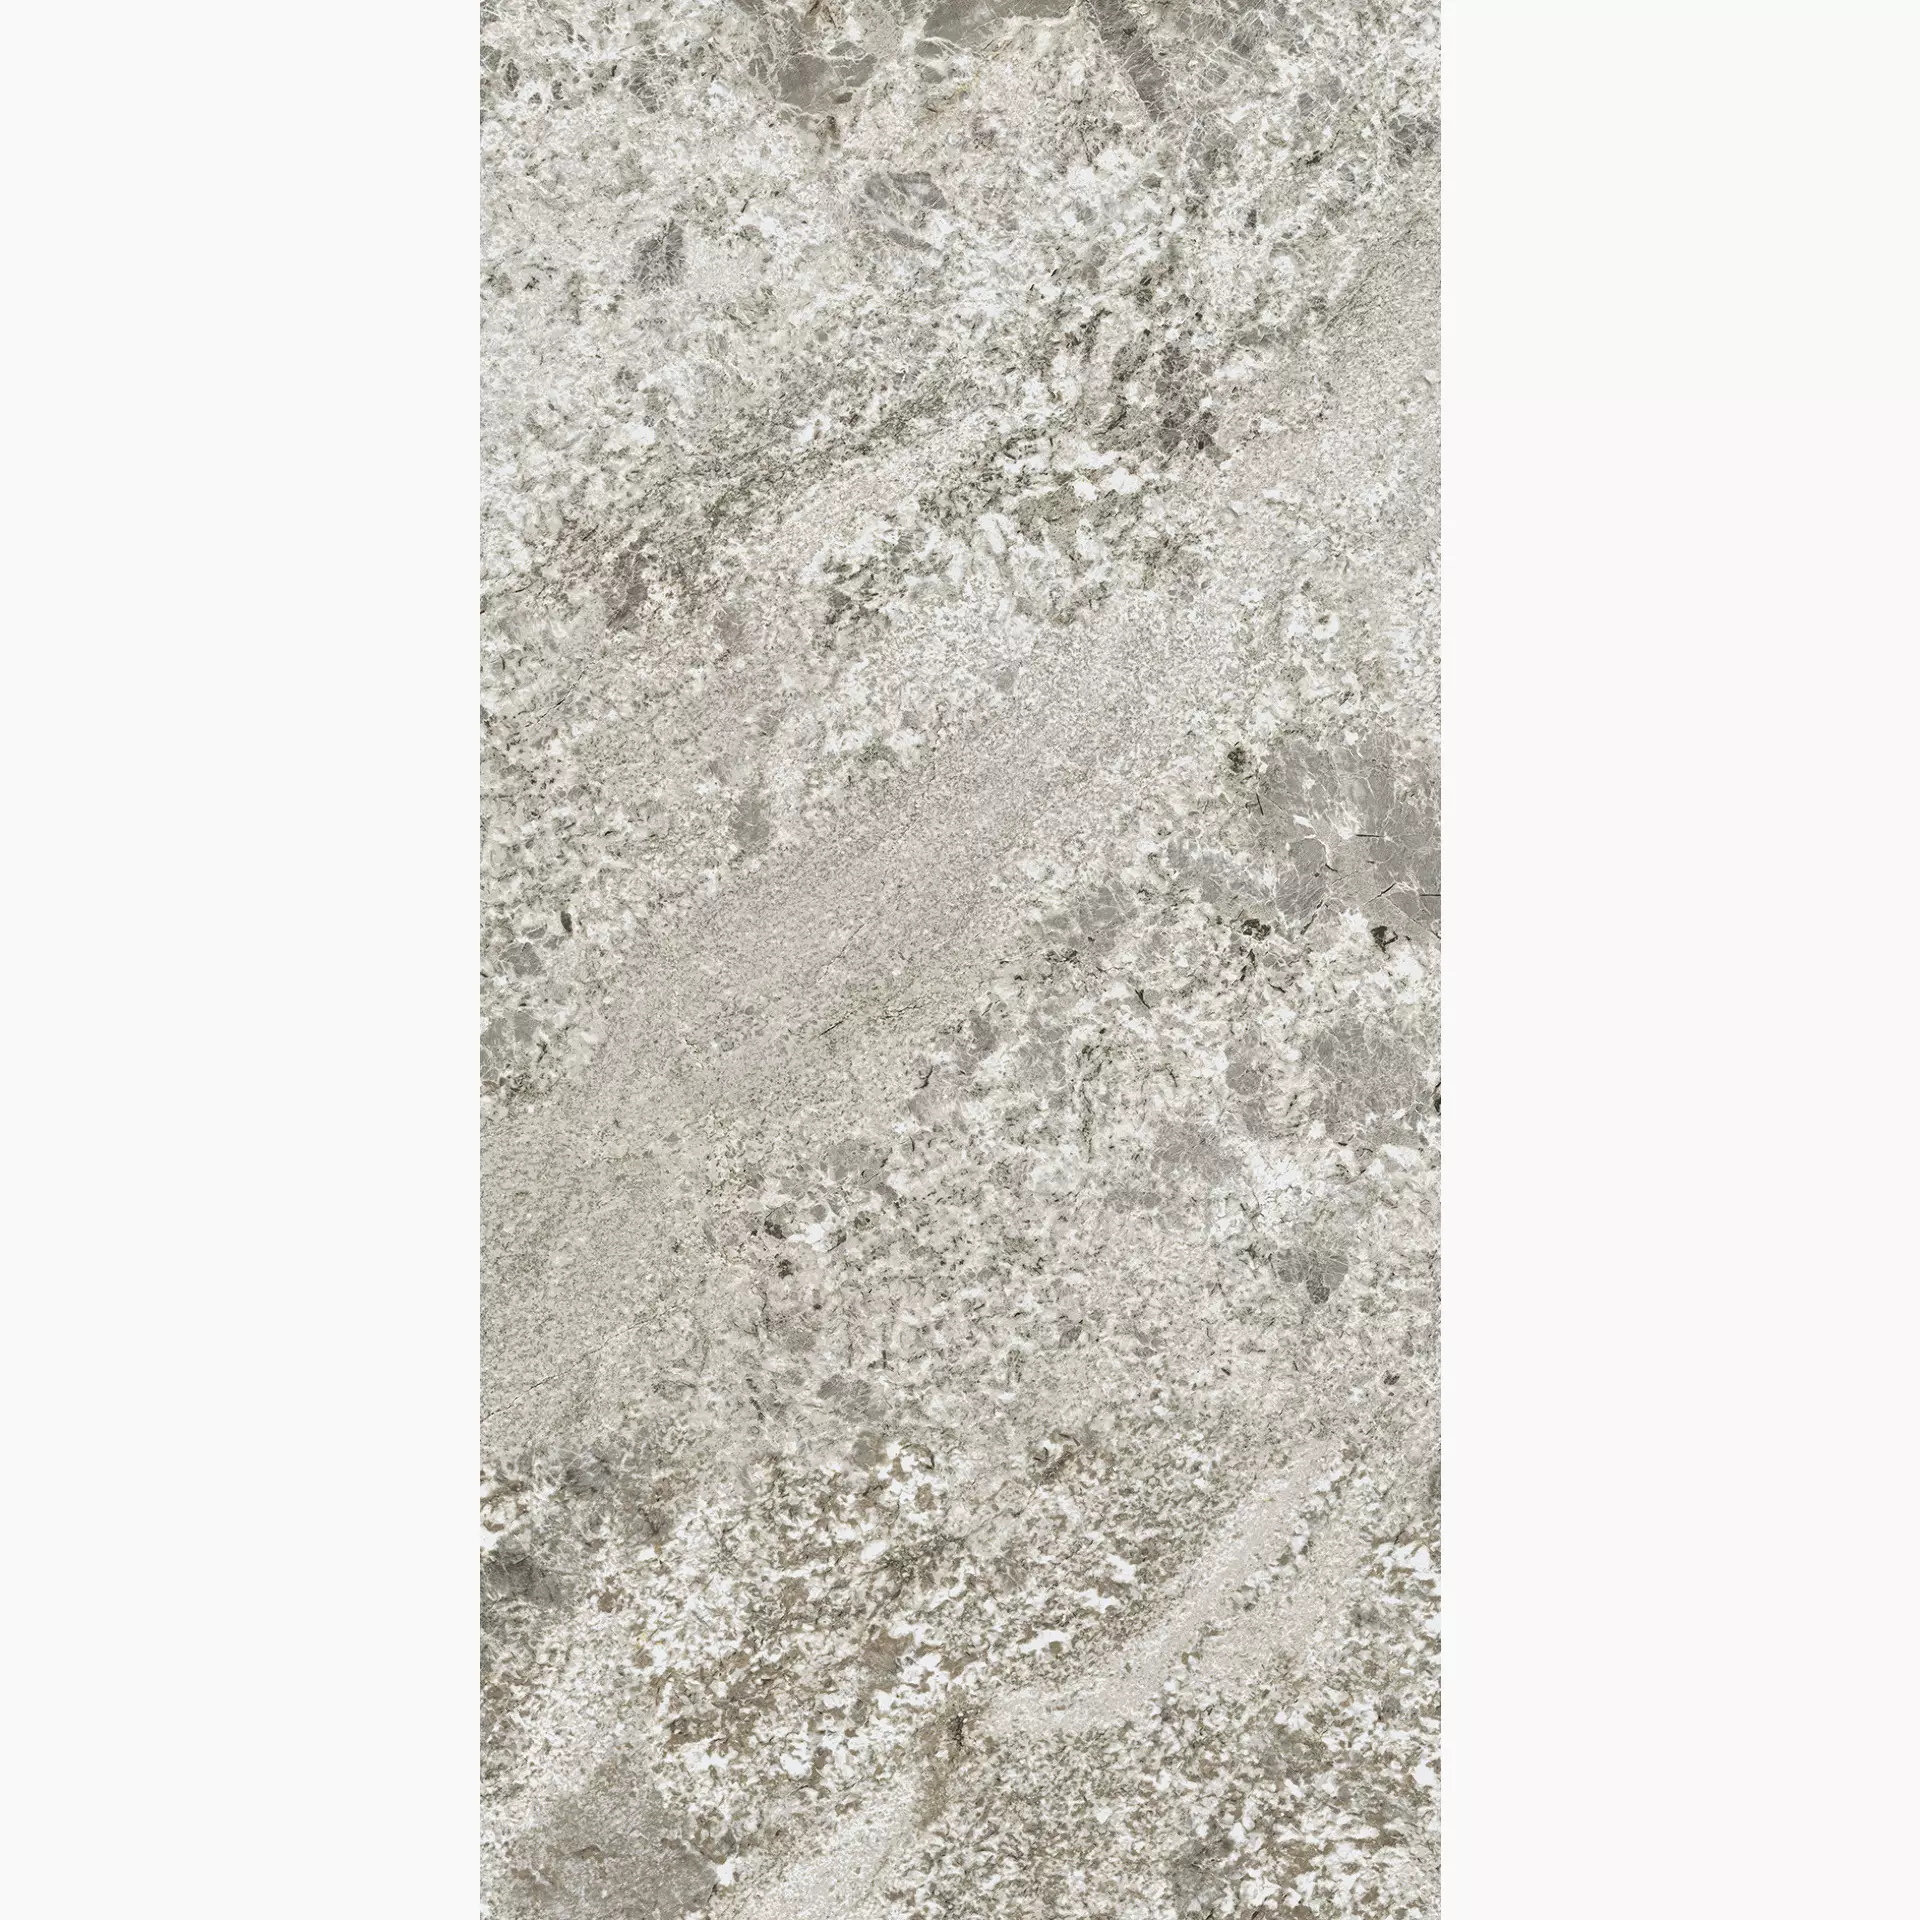 Florim Plimatech Plimagray 03 Naturale – Matt 776576 60x120cm rectified 9mm